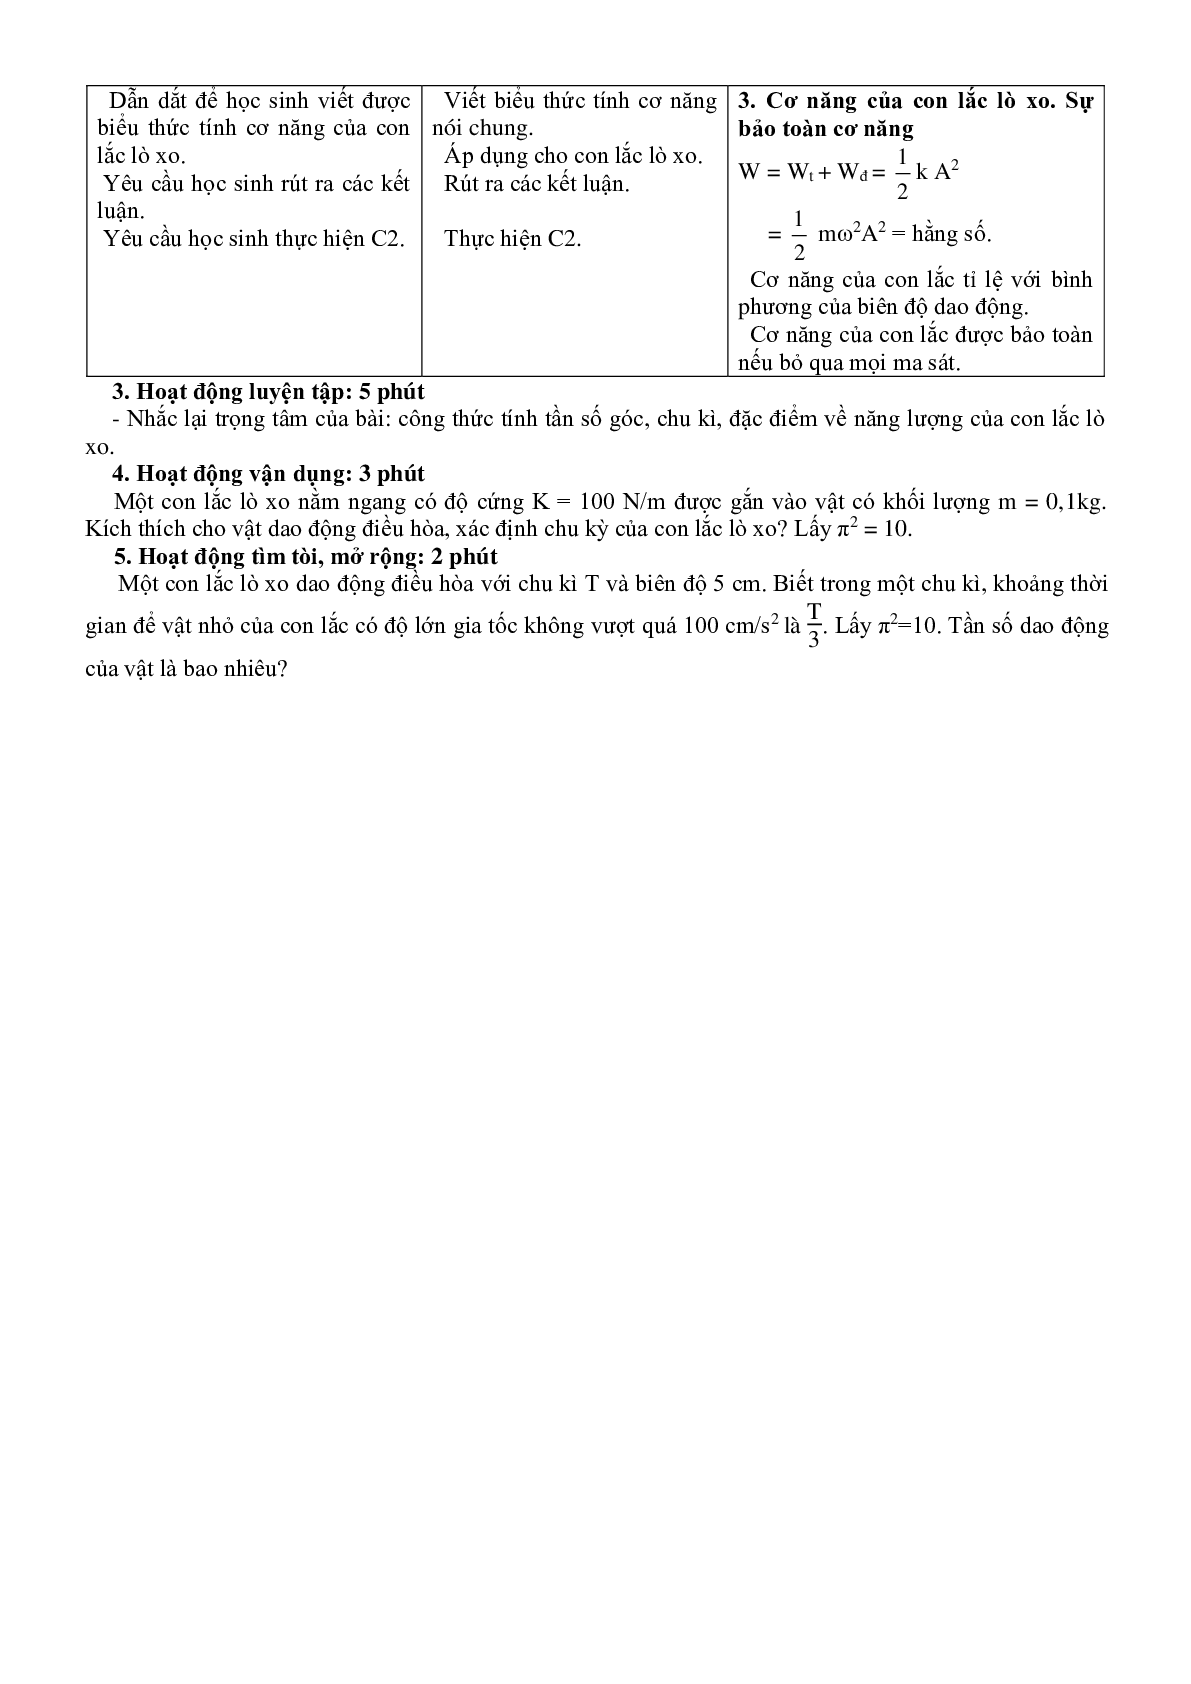 Giáo án Vật Lí 12 Bài 2 Con lắc lò xo mới nhất (trang 3)